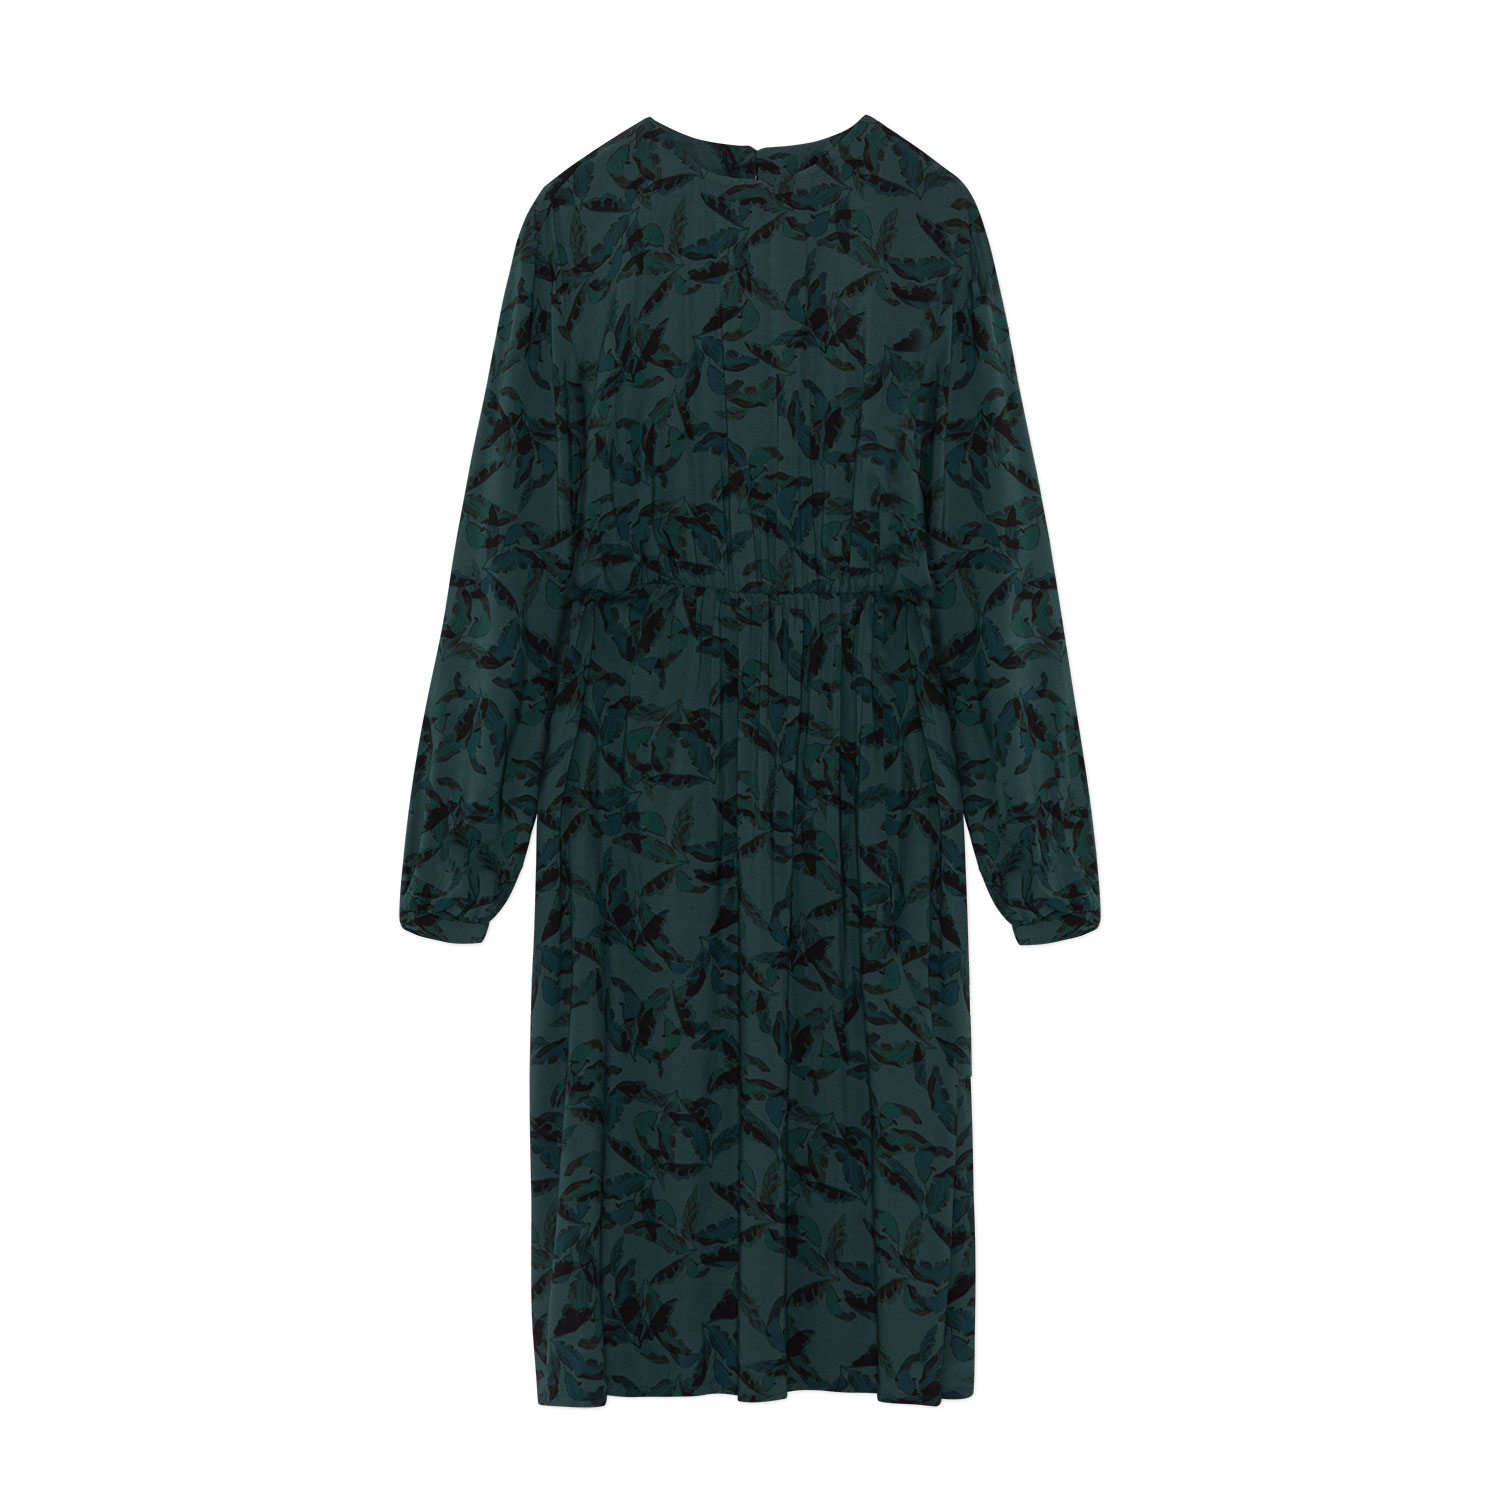 gemustertes Kleid aus Ecovero, langärmelig mit Taschen, Gummibund und Blättermuster in Blau-Grün